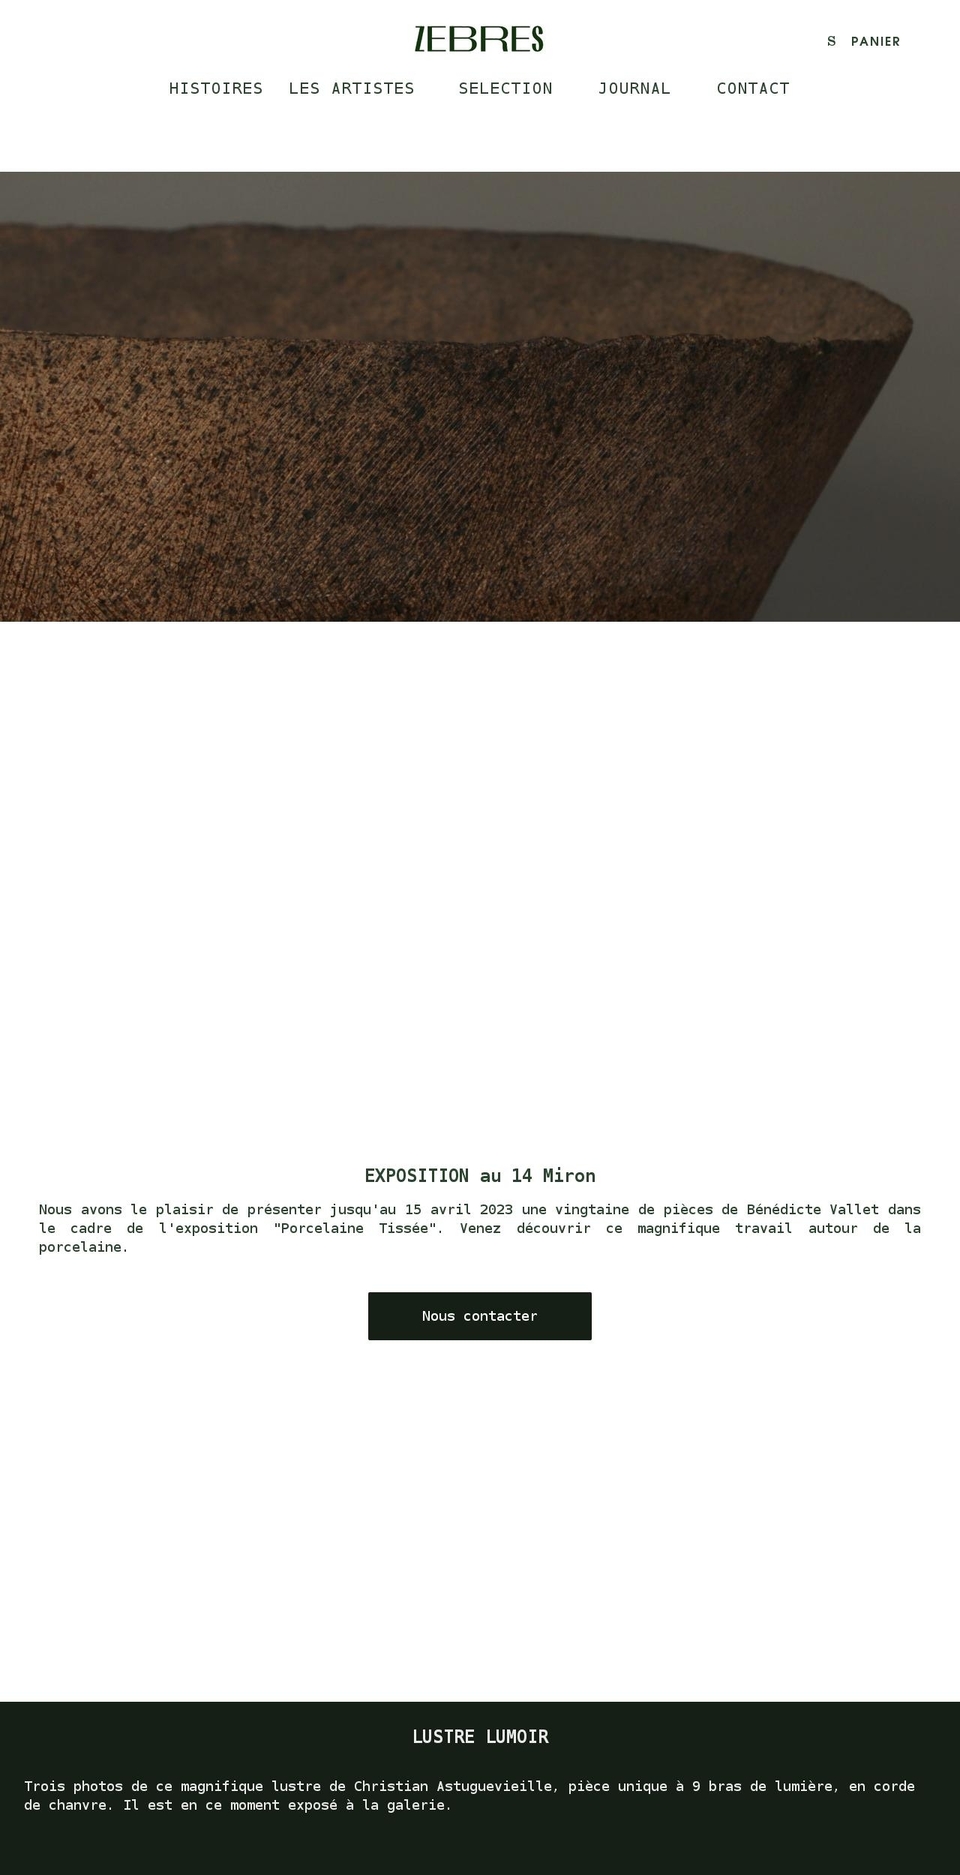 zebres.paris shopify website screenshot